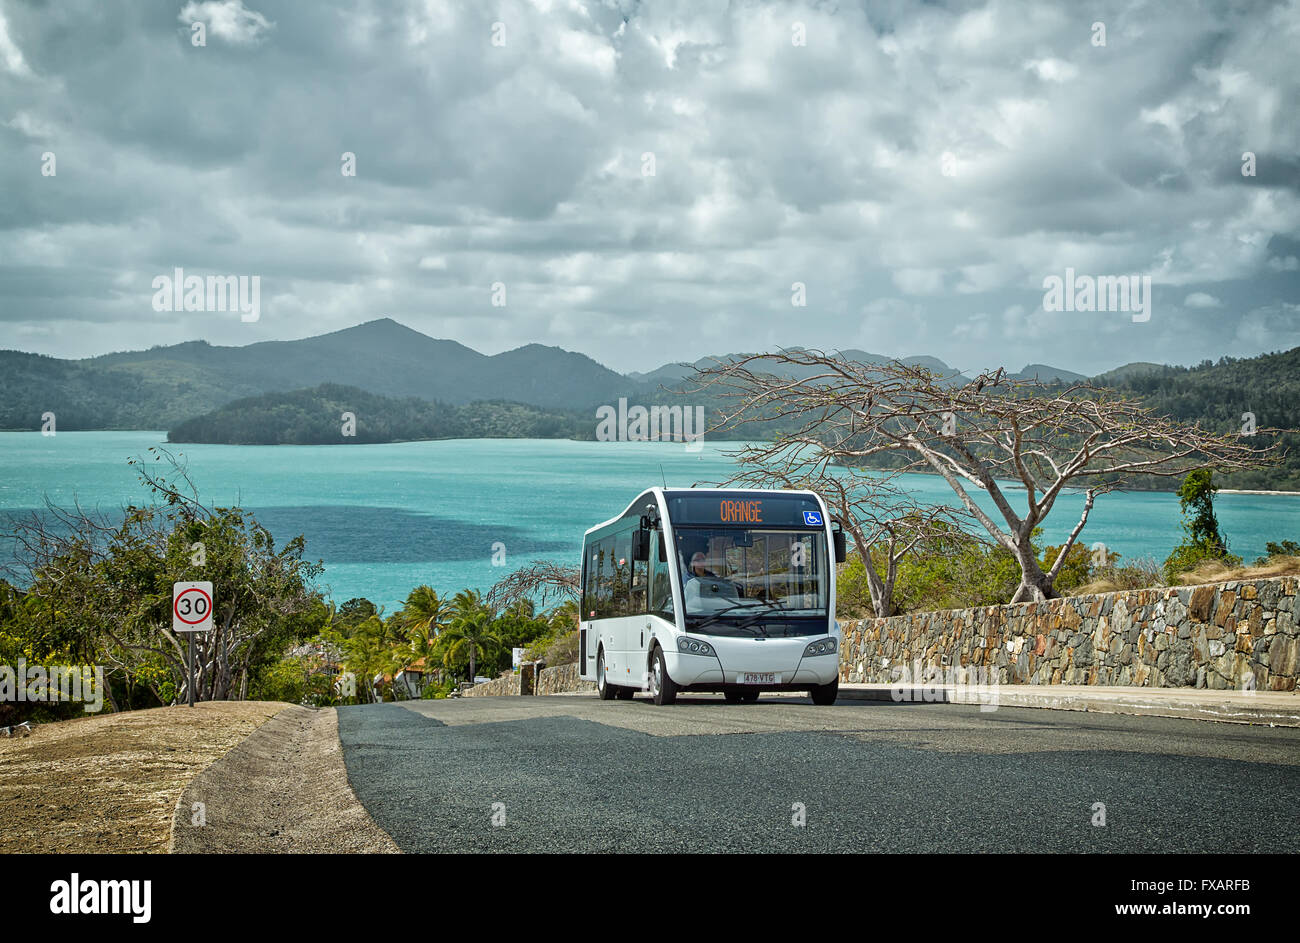 Un servizio di autobus gratuito convoglia i turisti intorno all'Isola di Hamilton. Golf buggy e gli autobus sono i soli veicoli ammessi. Foto Stock